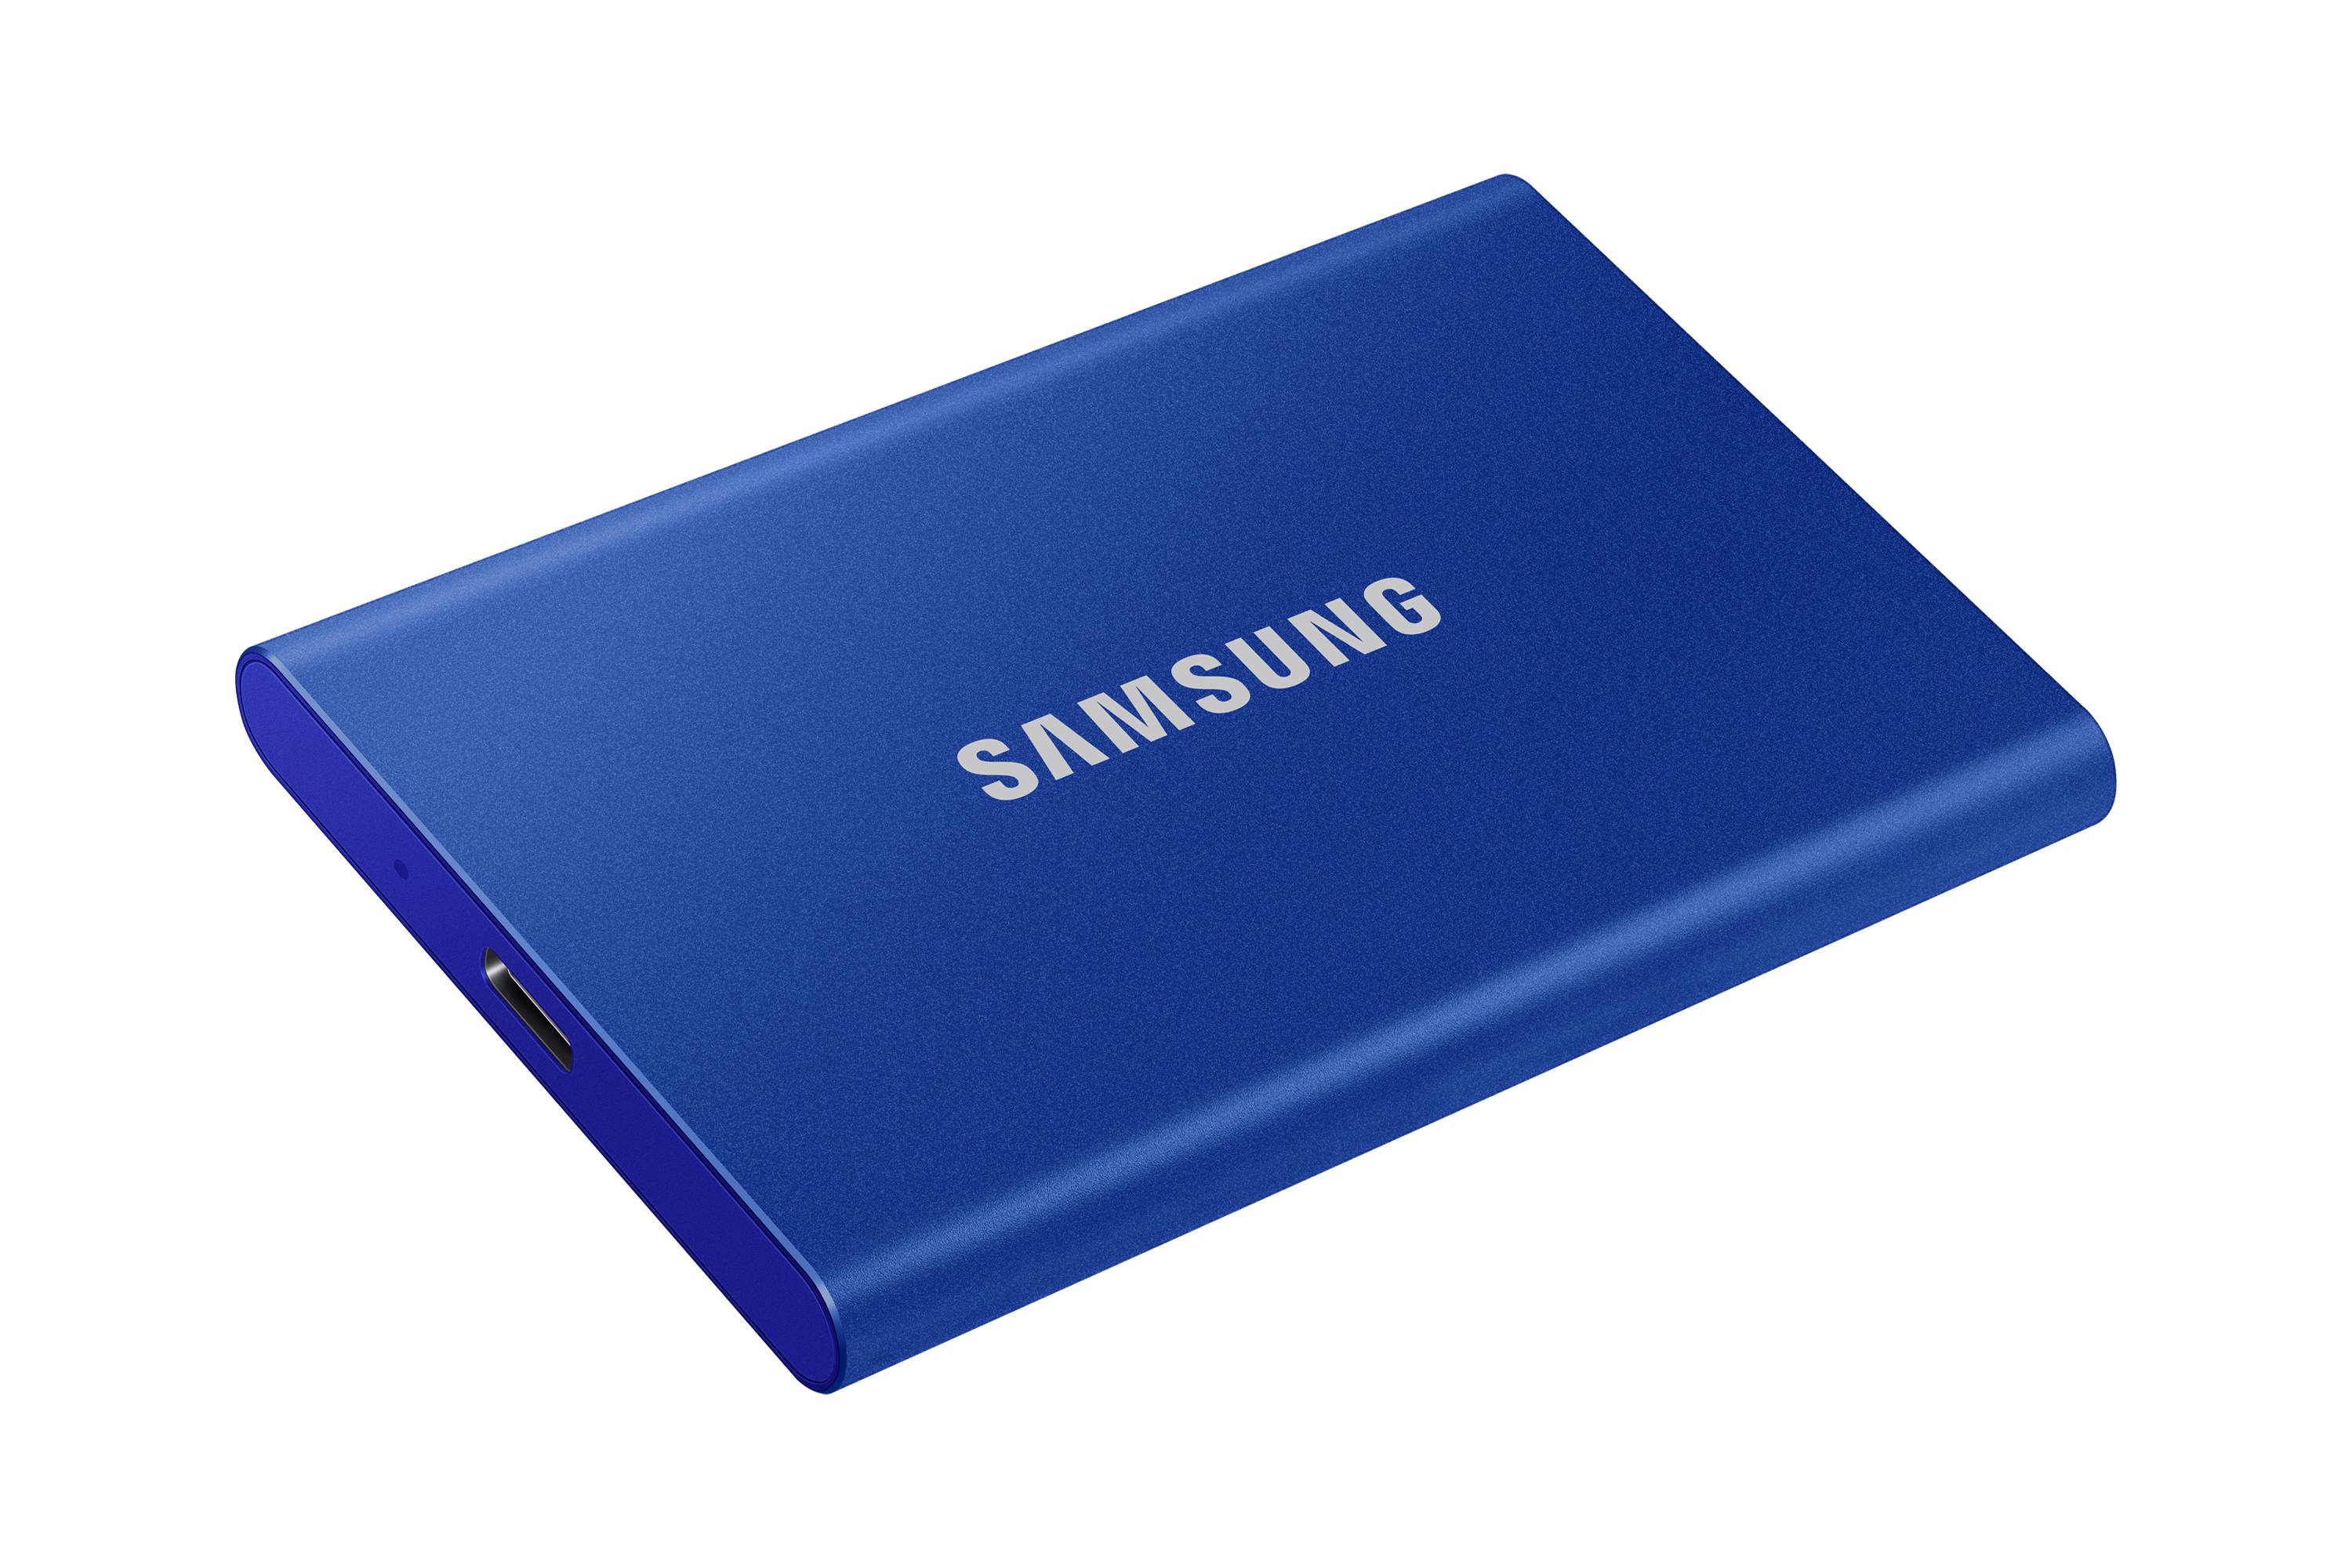 Rca Informatique - image du produit : SSD PORTABLE T7 1TB USB 3.2 INDIGO BLUE